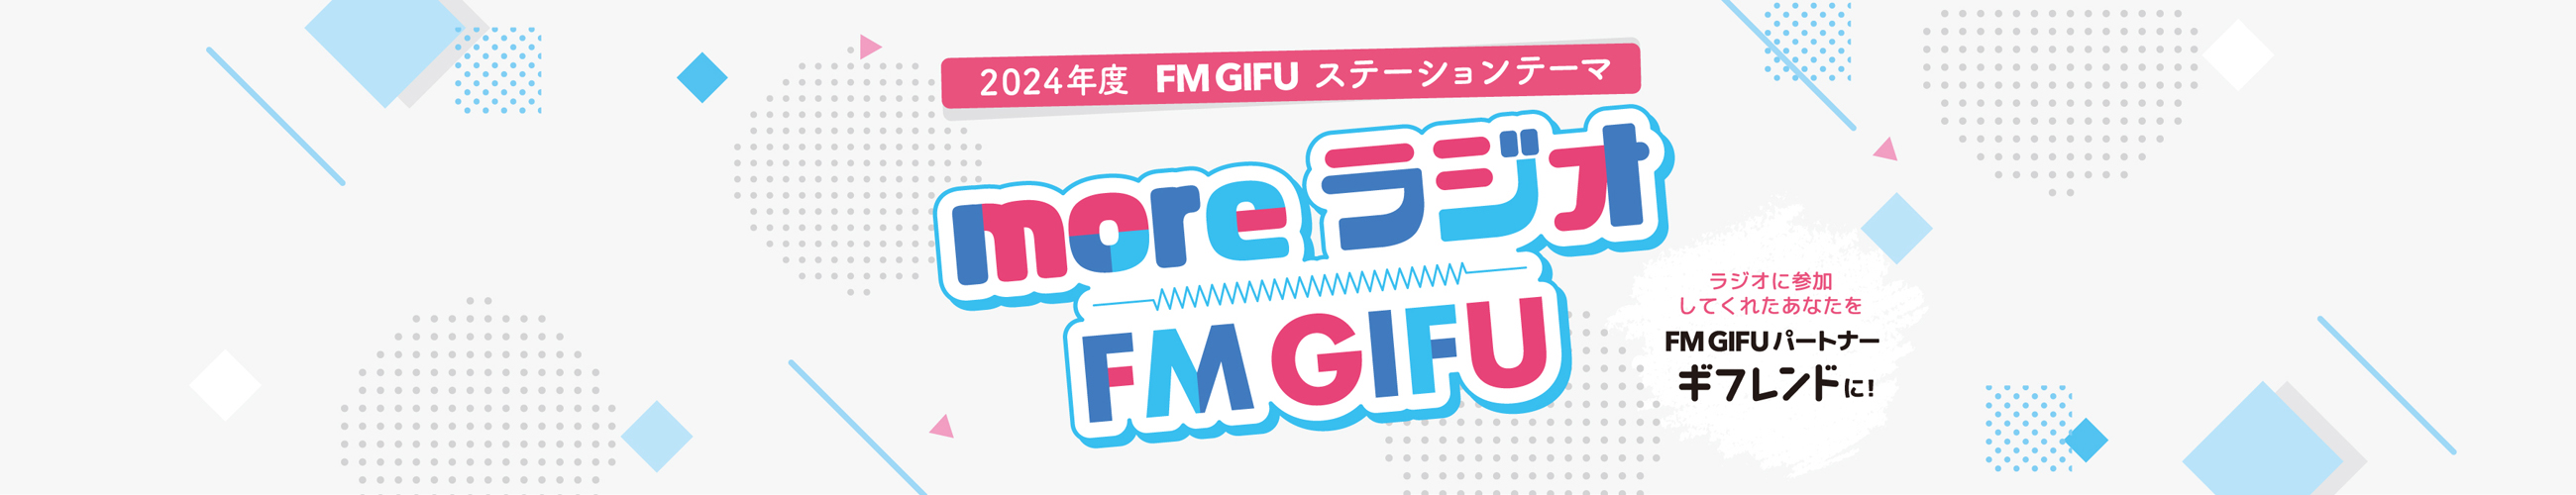 FM GIFU ステーションテーマ